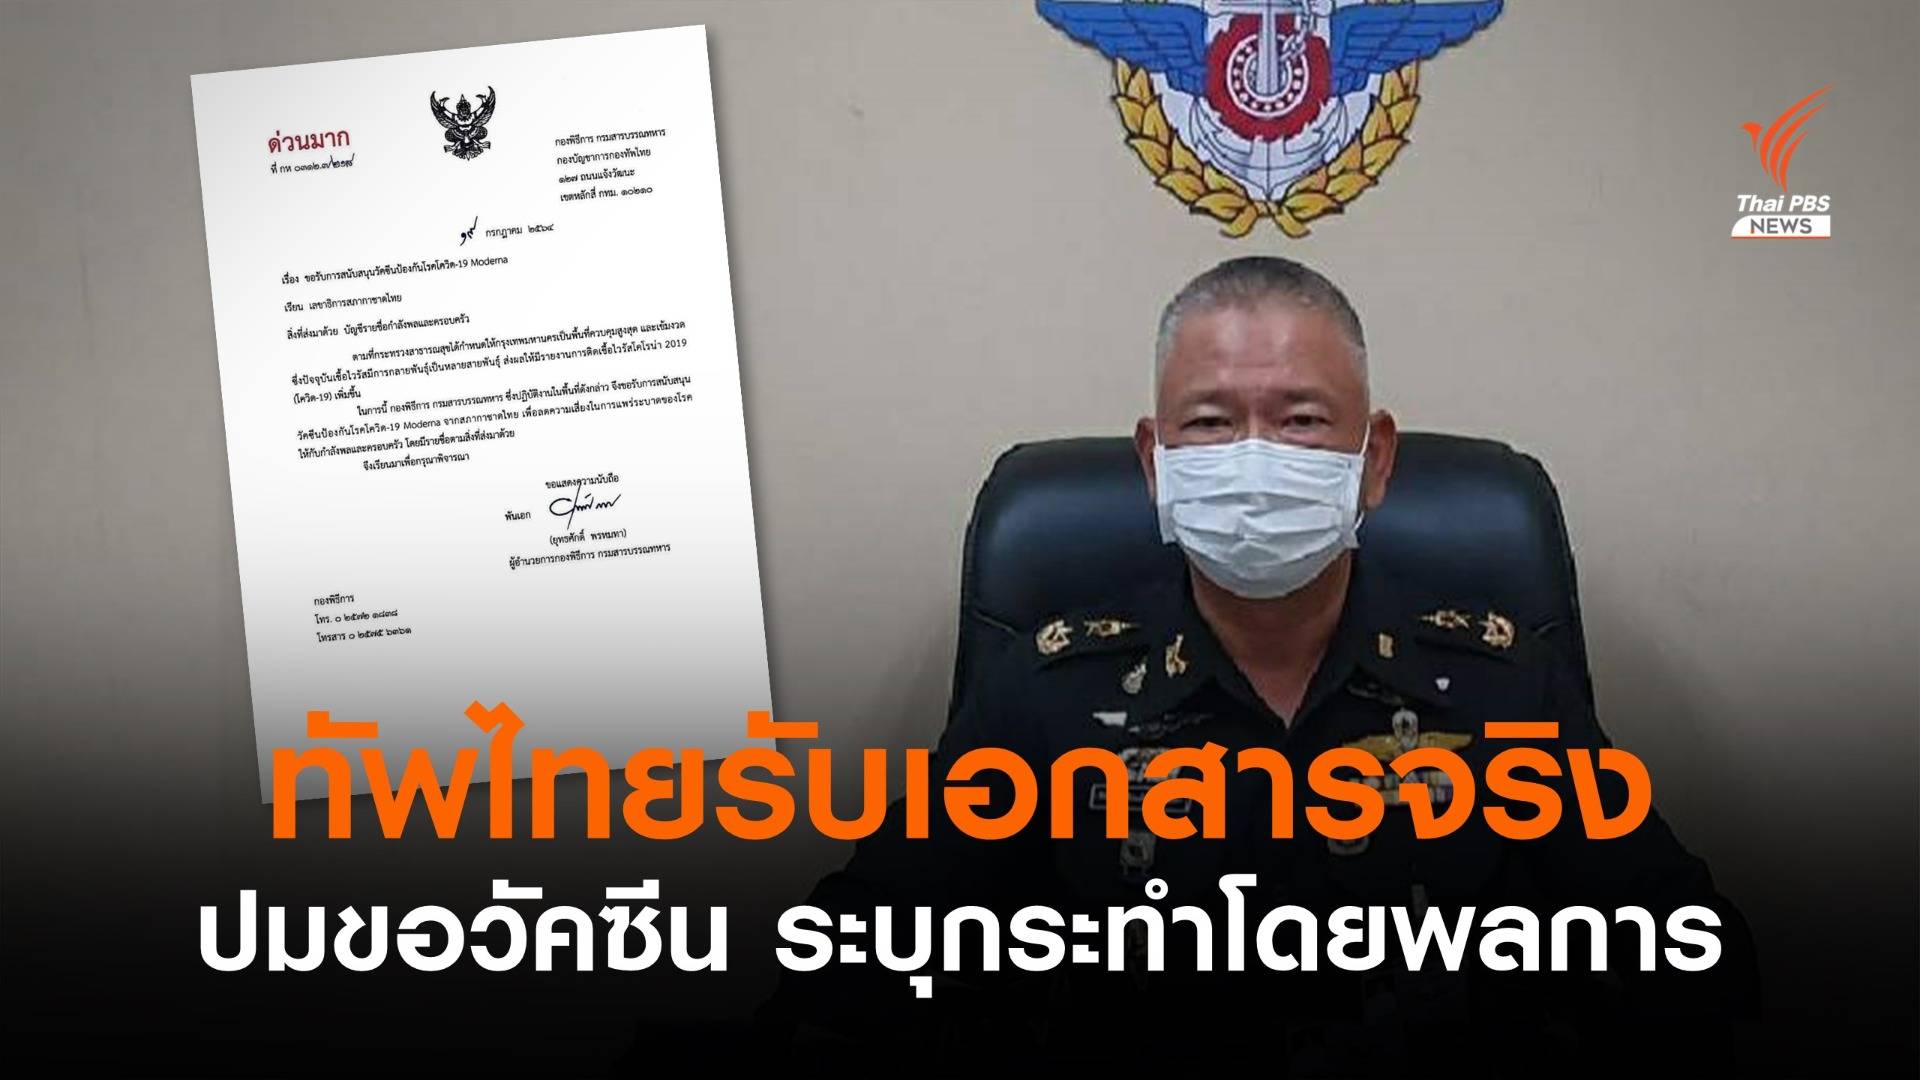 กองทัพไทยเตรียมลงโทษทางวินัย ปมหนังสือขอรับวัคซีนจากสภากาชาดไทย